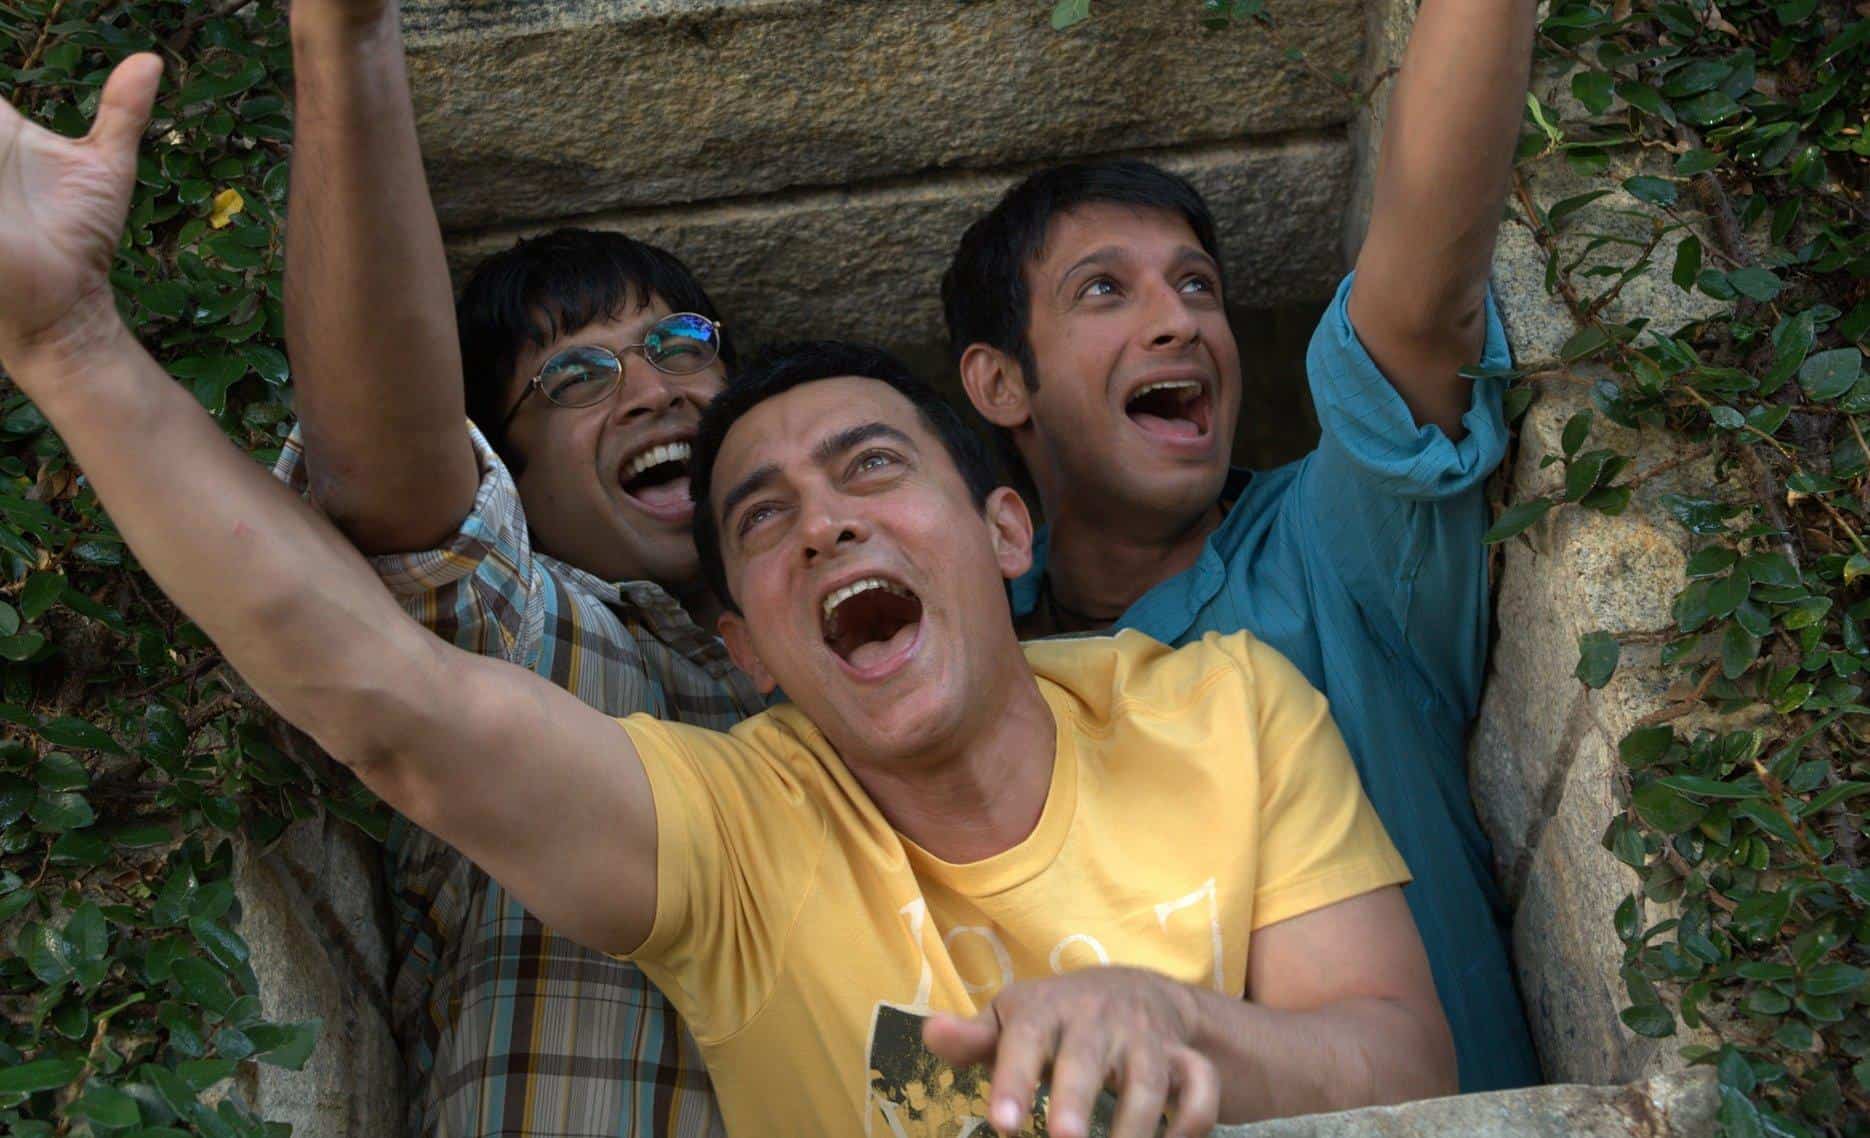 3 Idiots (2009) | Sharman Joshi, Aamir Khan, and Madhavan in 3 Idiots (2009)